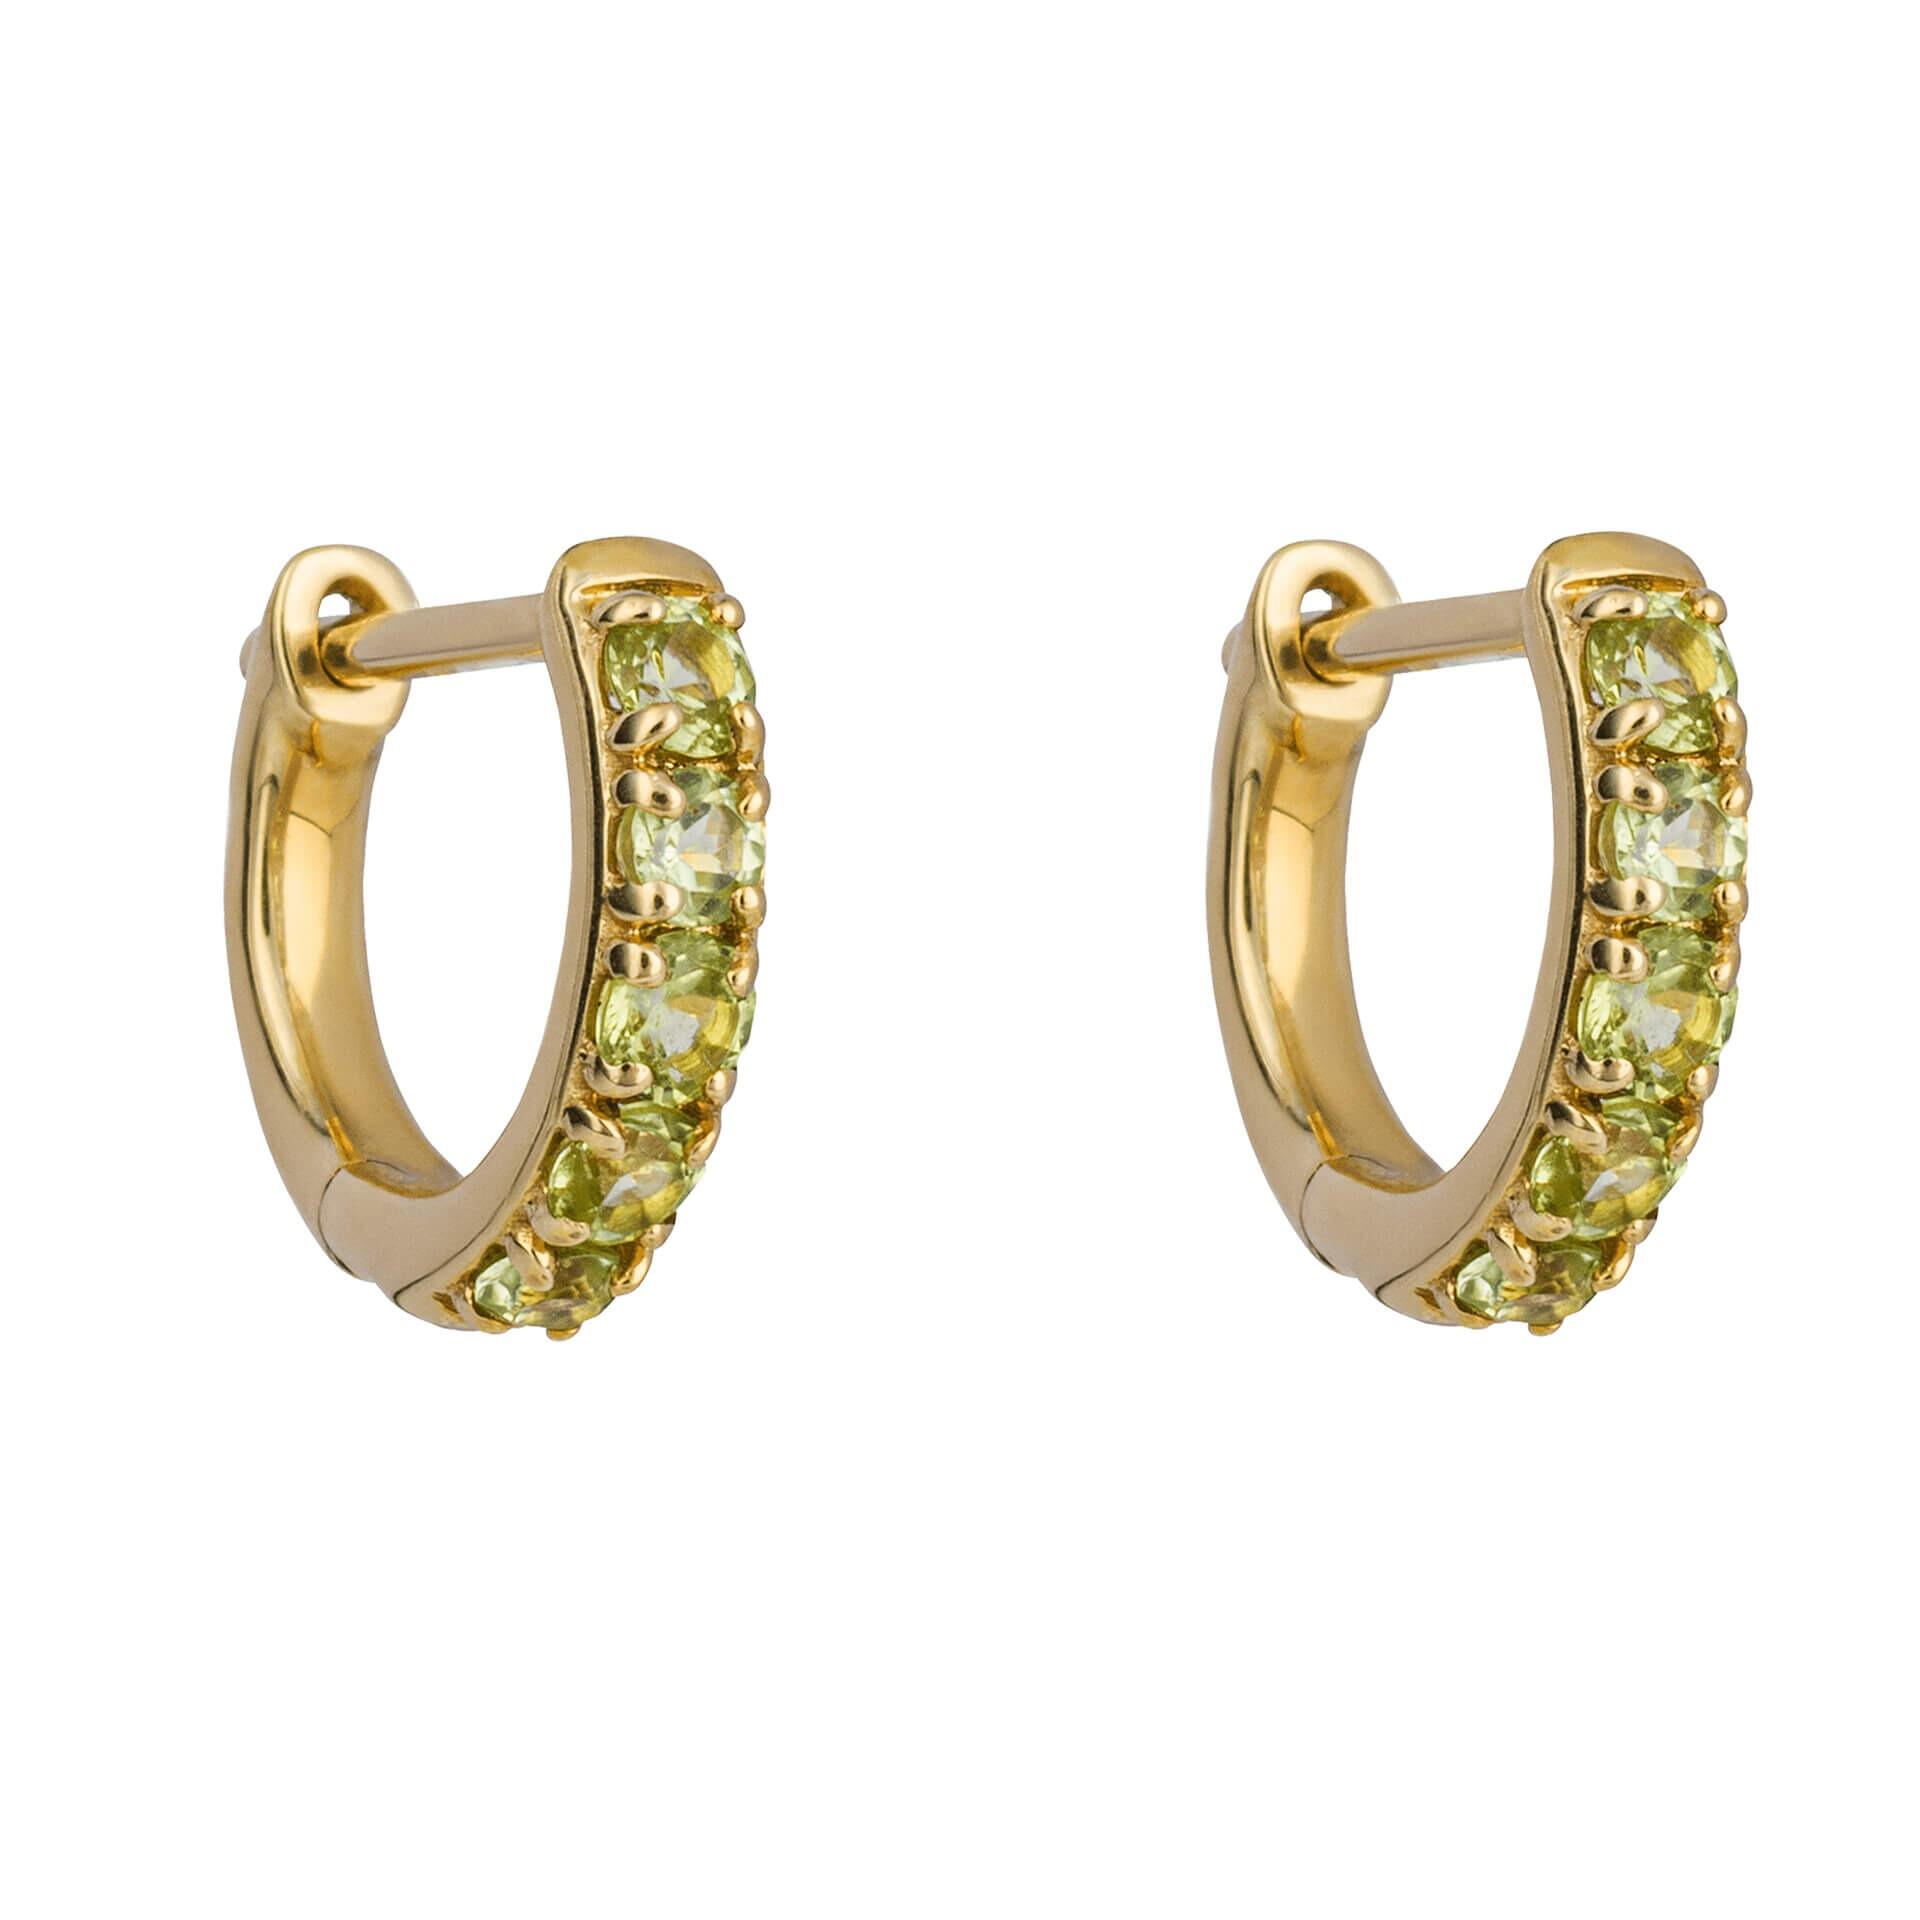 9ct Gold Semi-Precious Gemstone Hoop Earrings